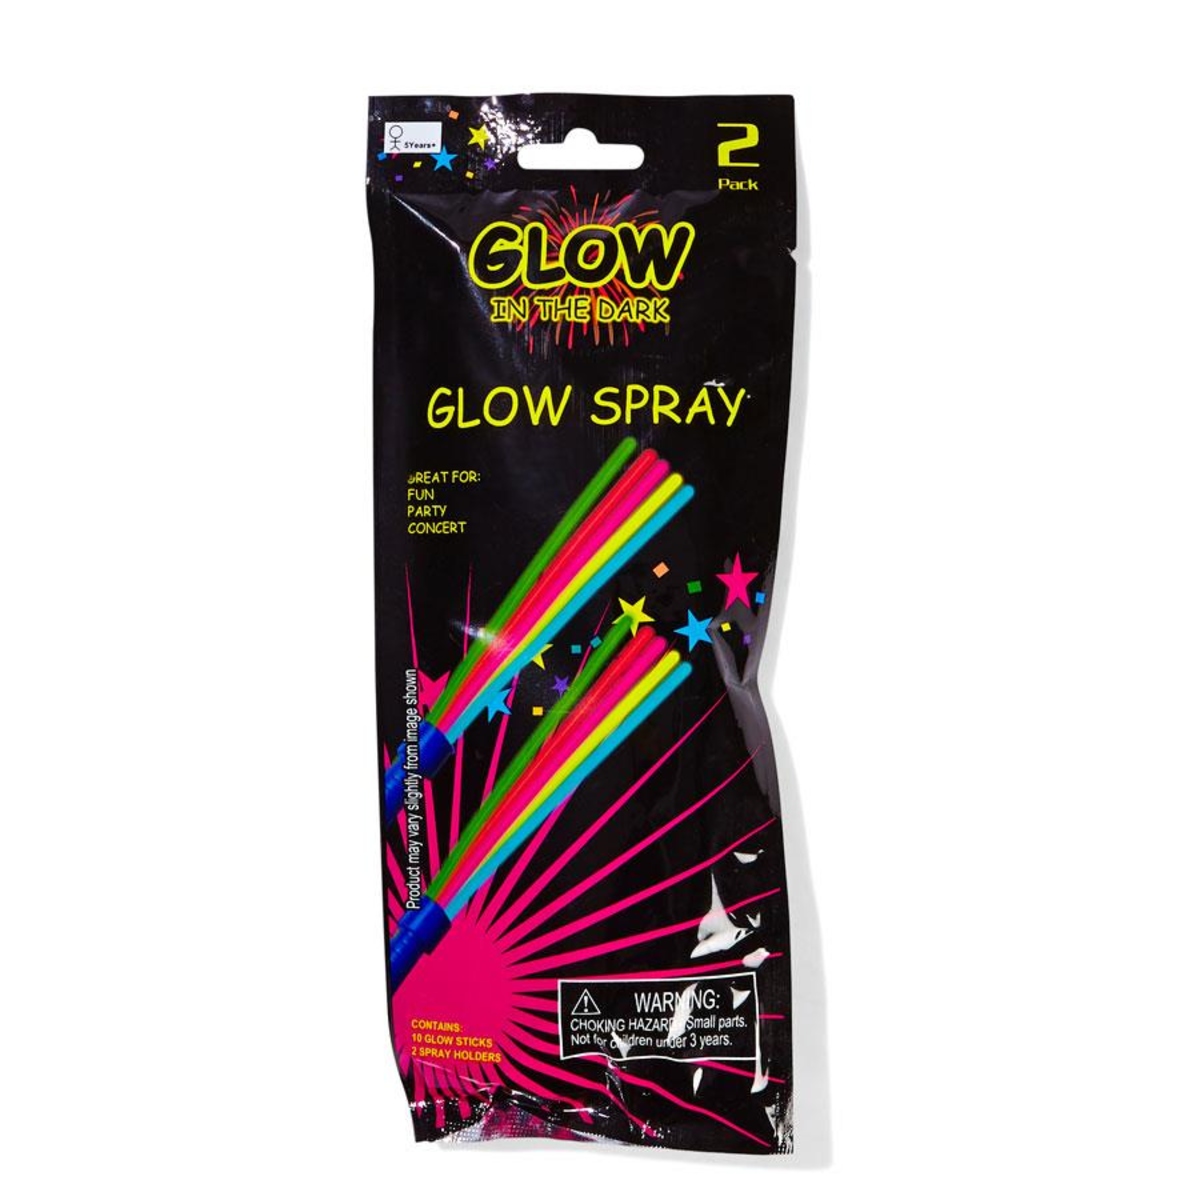 2 Pack Glow Spray